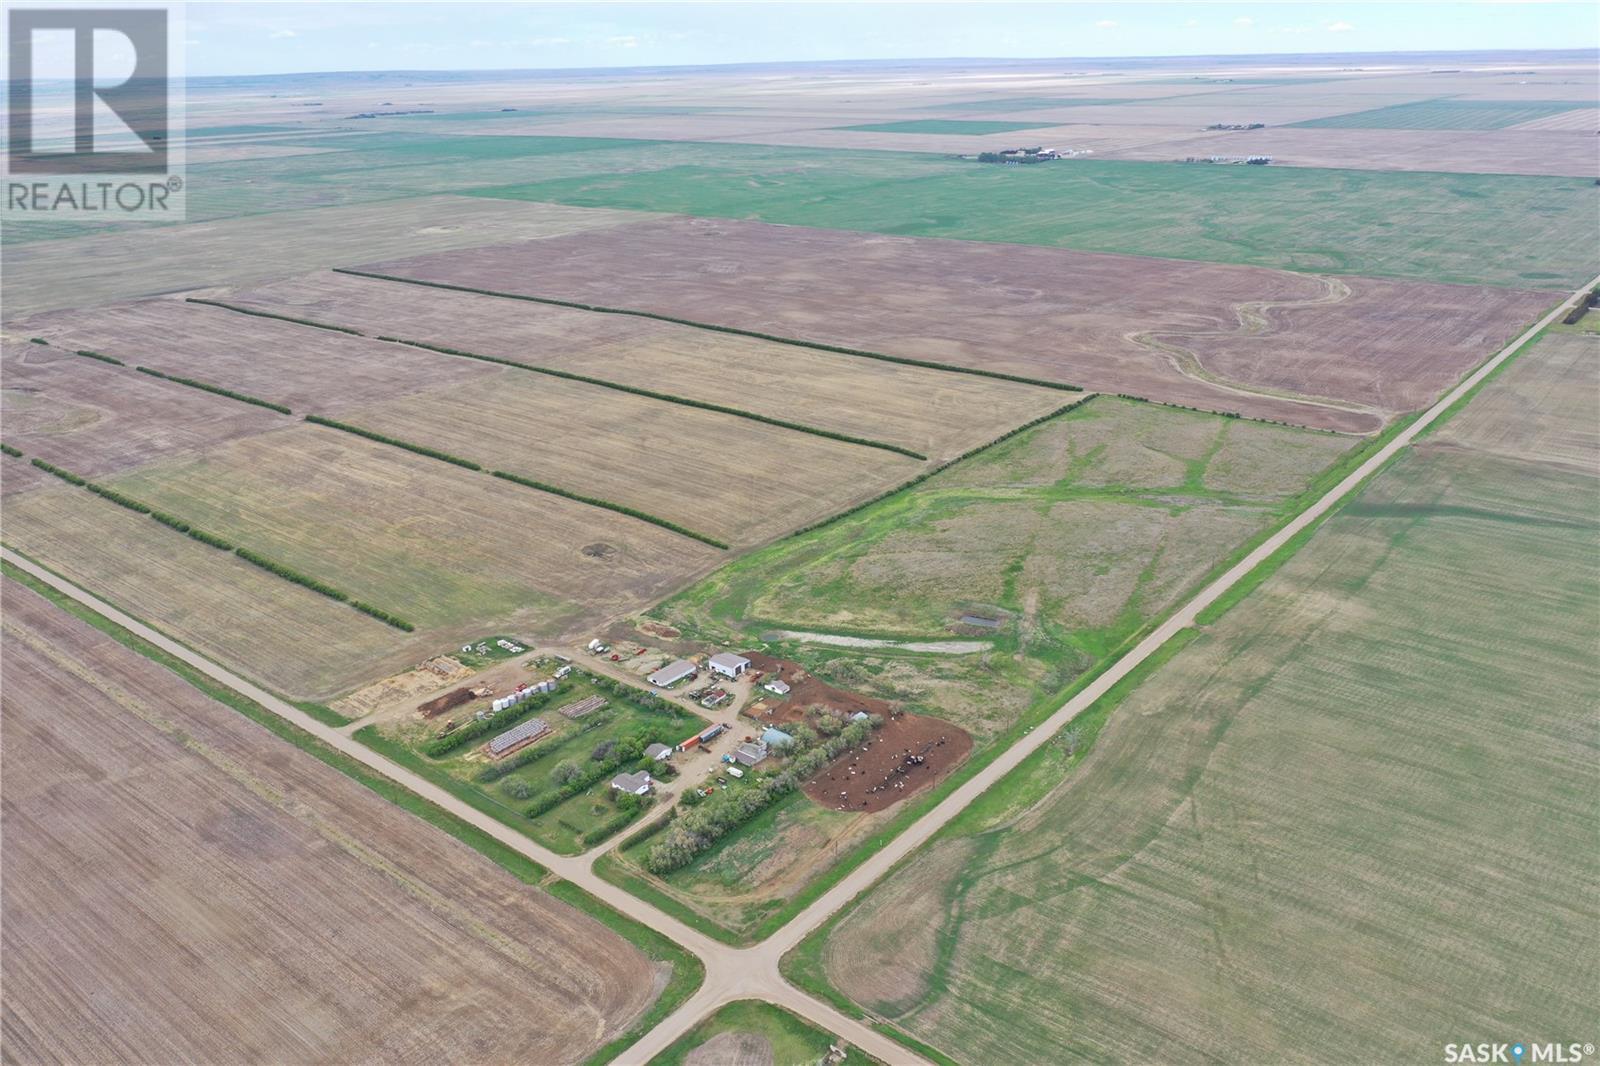 Wiseton Mixed Farm- 1,193 Acres, wiseton, Saskatchewan